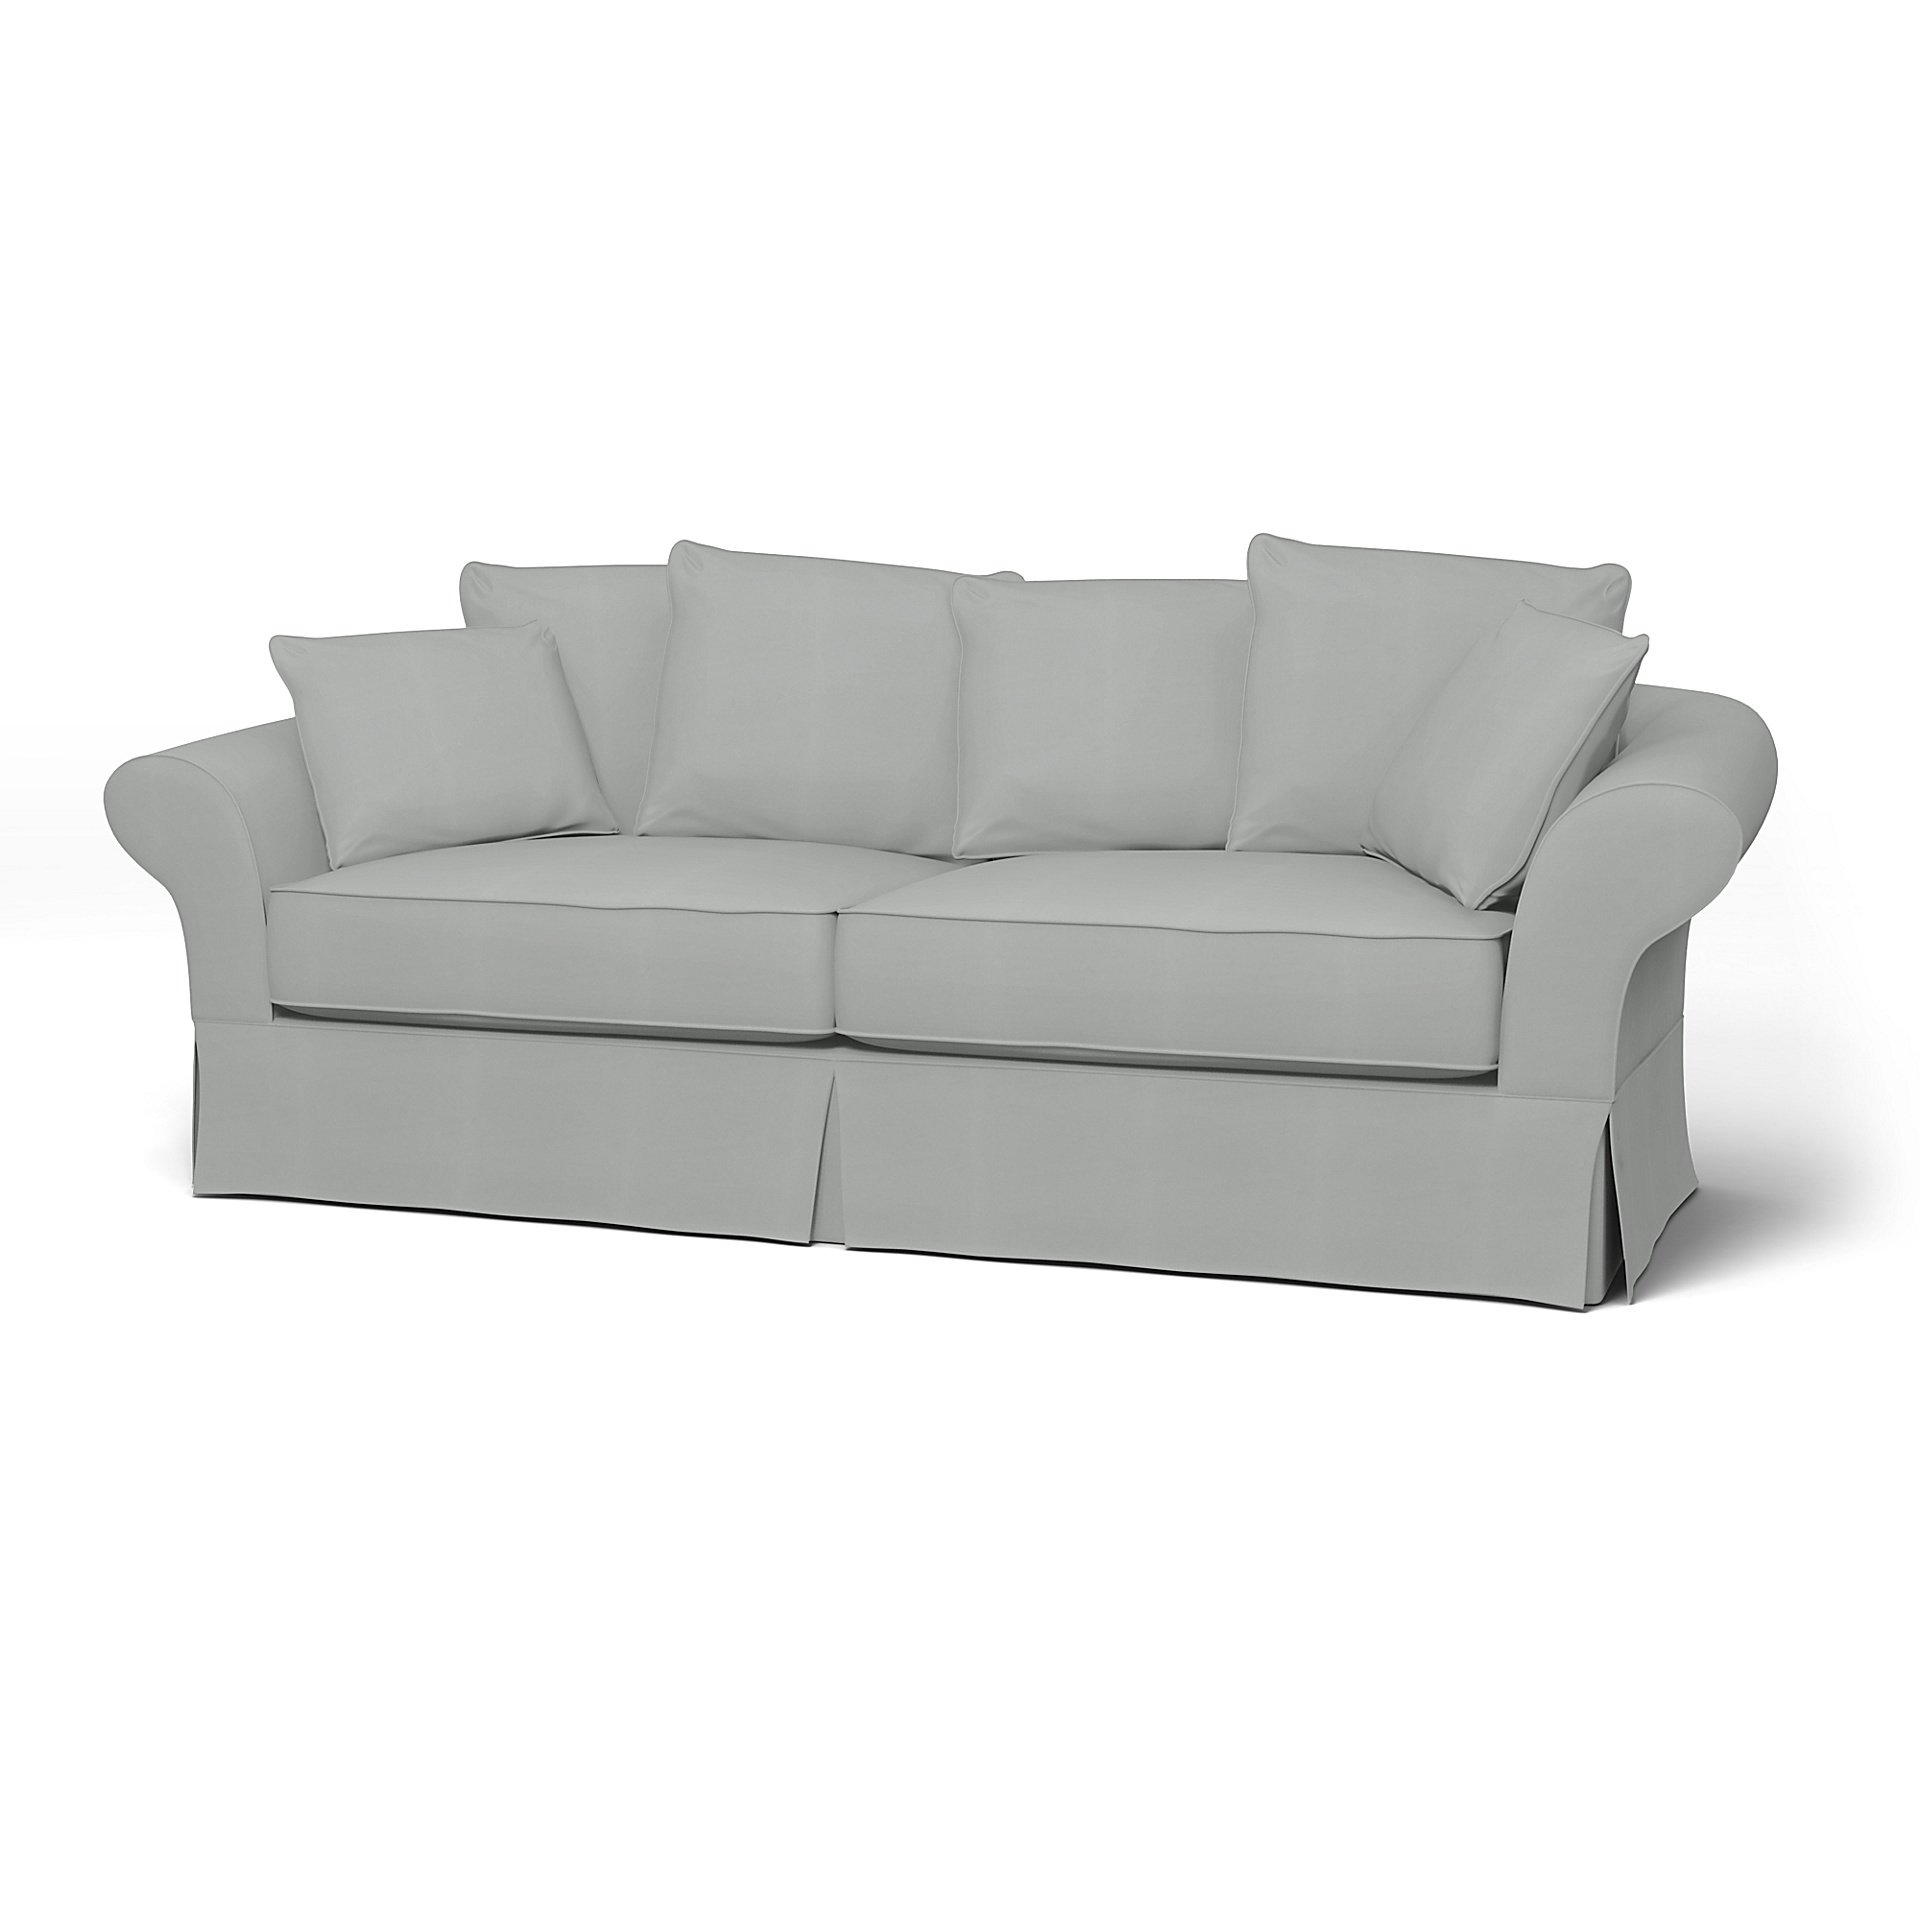 IKEA - Backamo 3 Seater Sofa Cover, Silver Grey, Cotton - Bemz